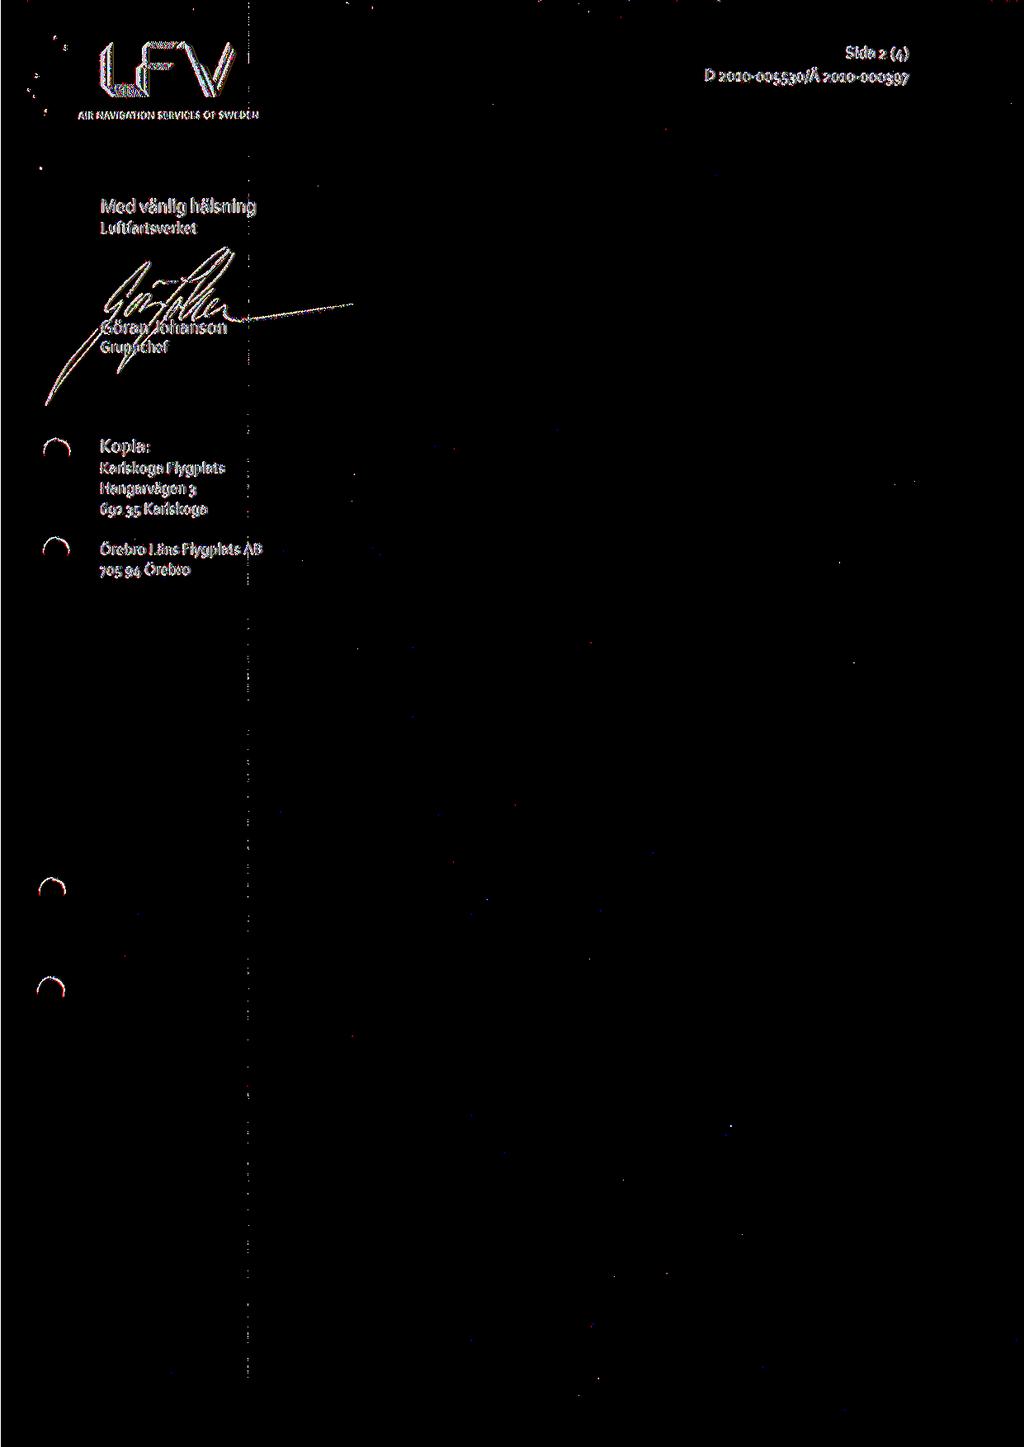 Sida 2 (4) D 2010-005530/A 2010-000397 Med vanlig halsning Luftfartsverket orarrjohanson